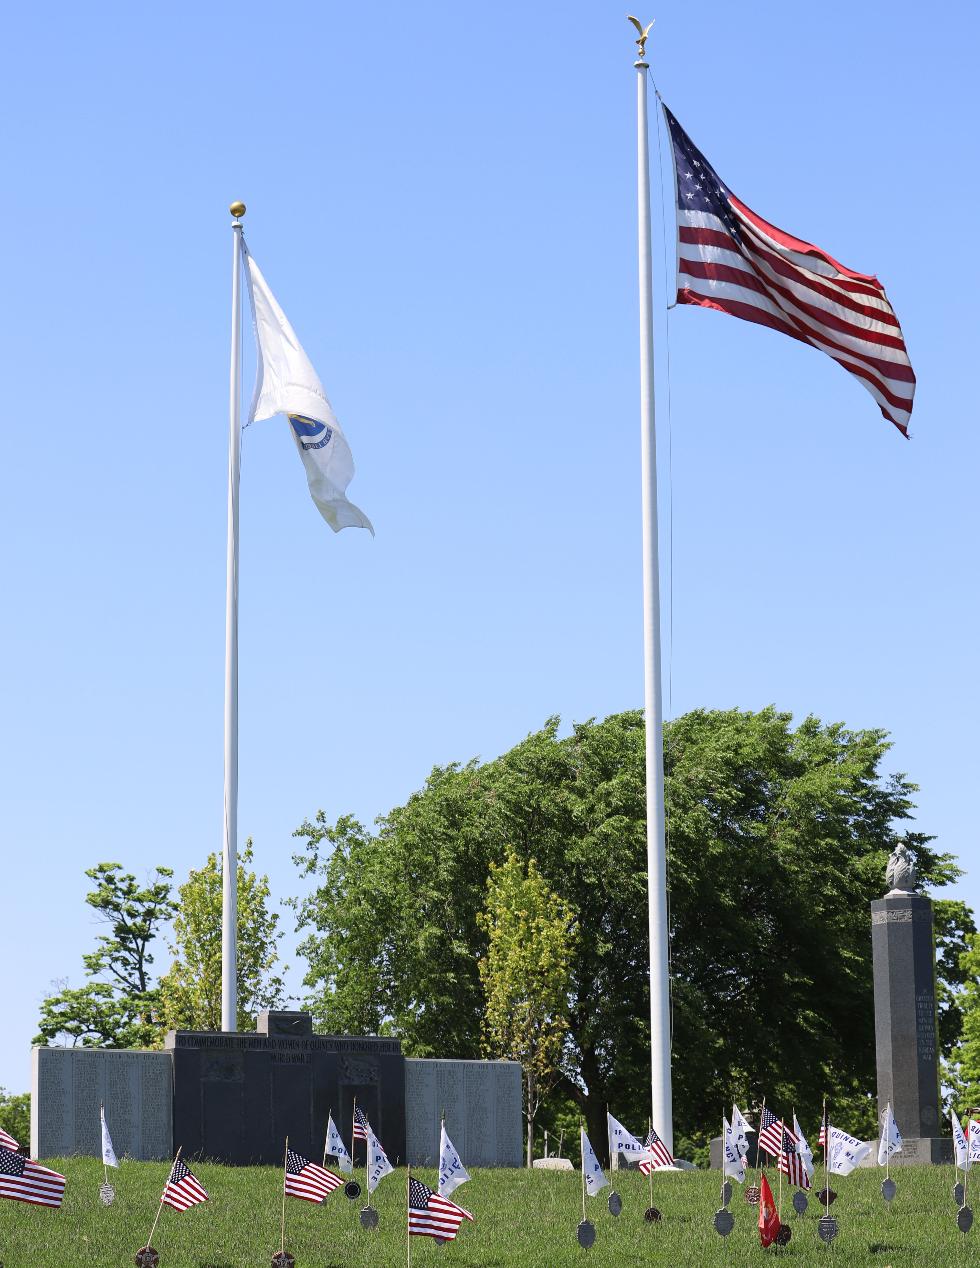 Quincy Massachusetts World War II Veterans Memorial